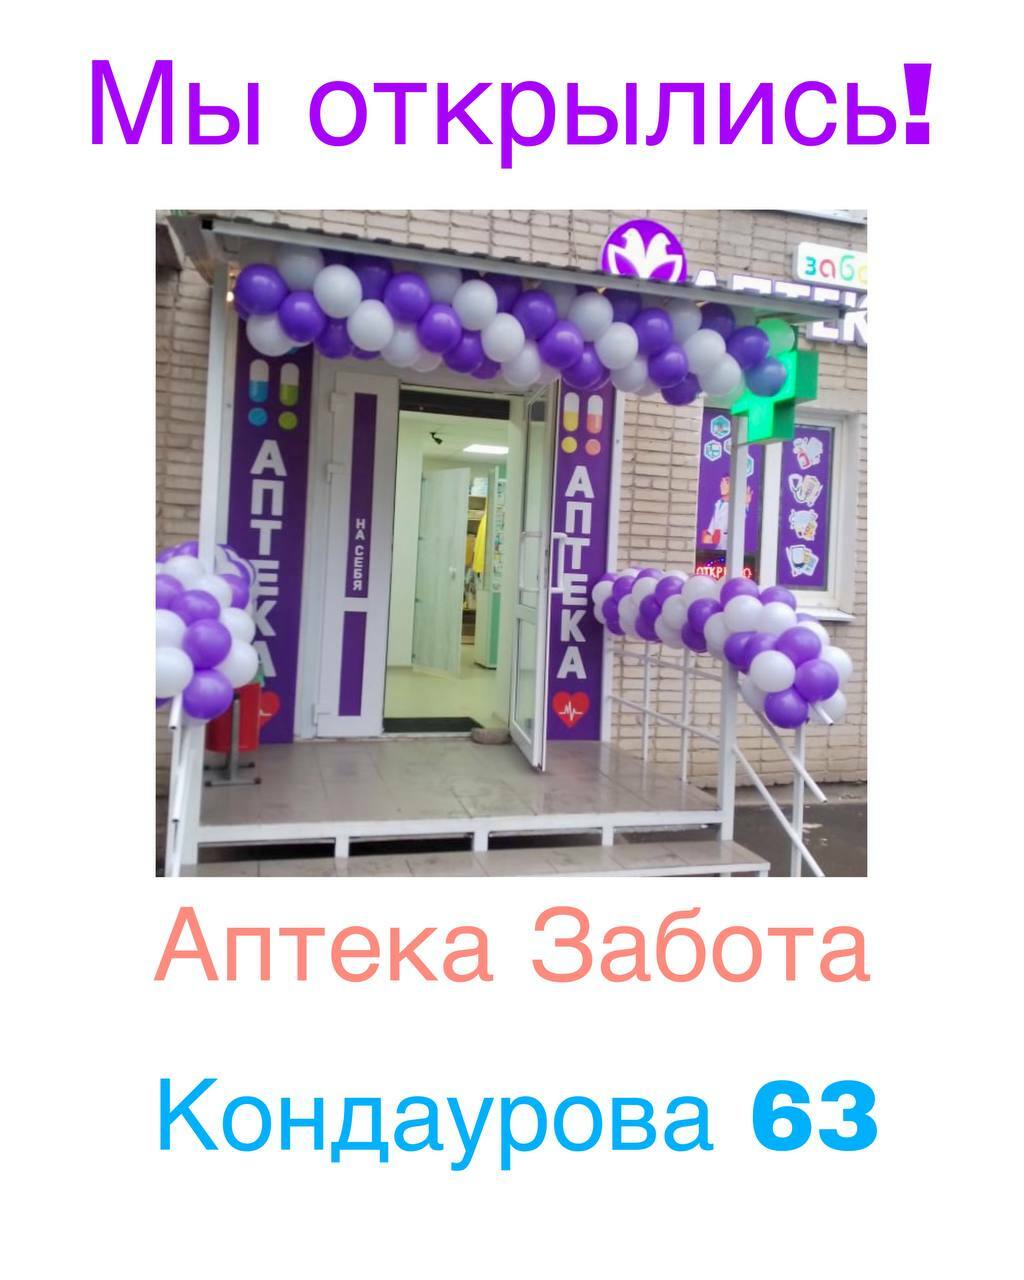 Аптека "Забота плюс", г. Азов, Кондаурова 63